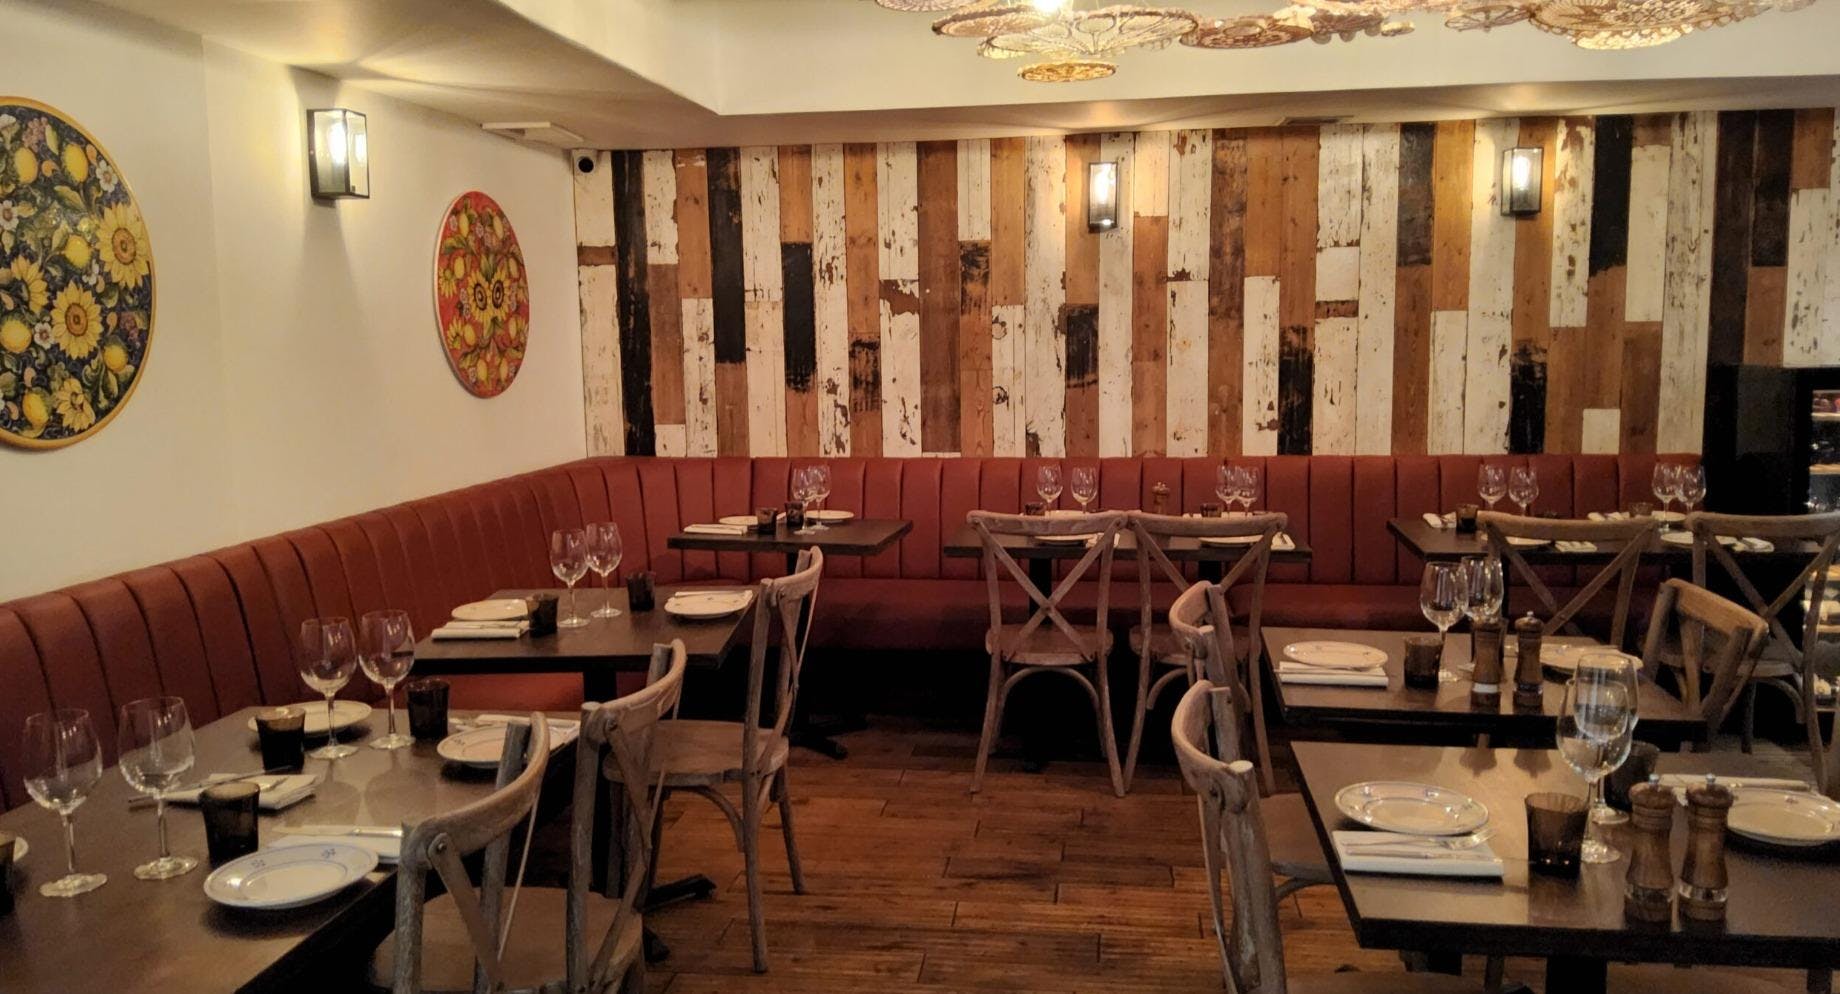 Photo of restaurant Terra Rossa - St Paul's in St Paul's, London